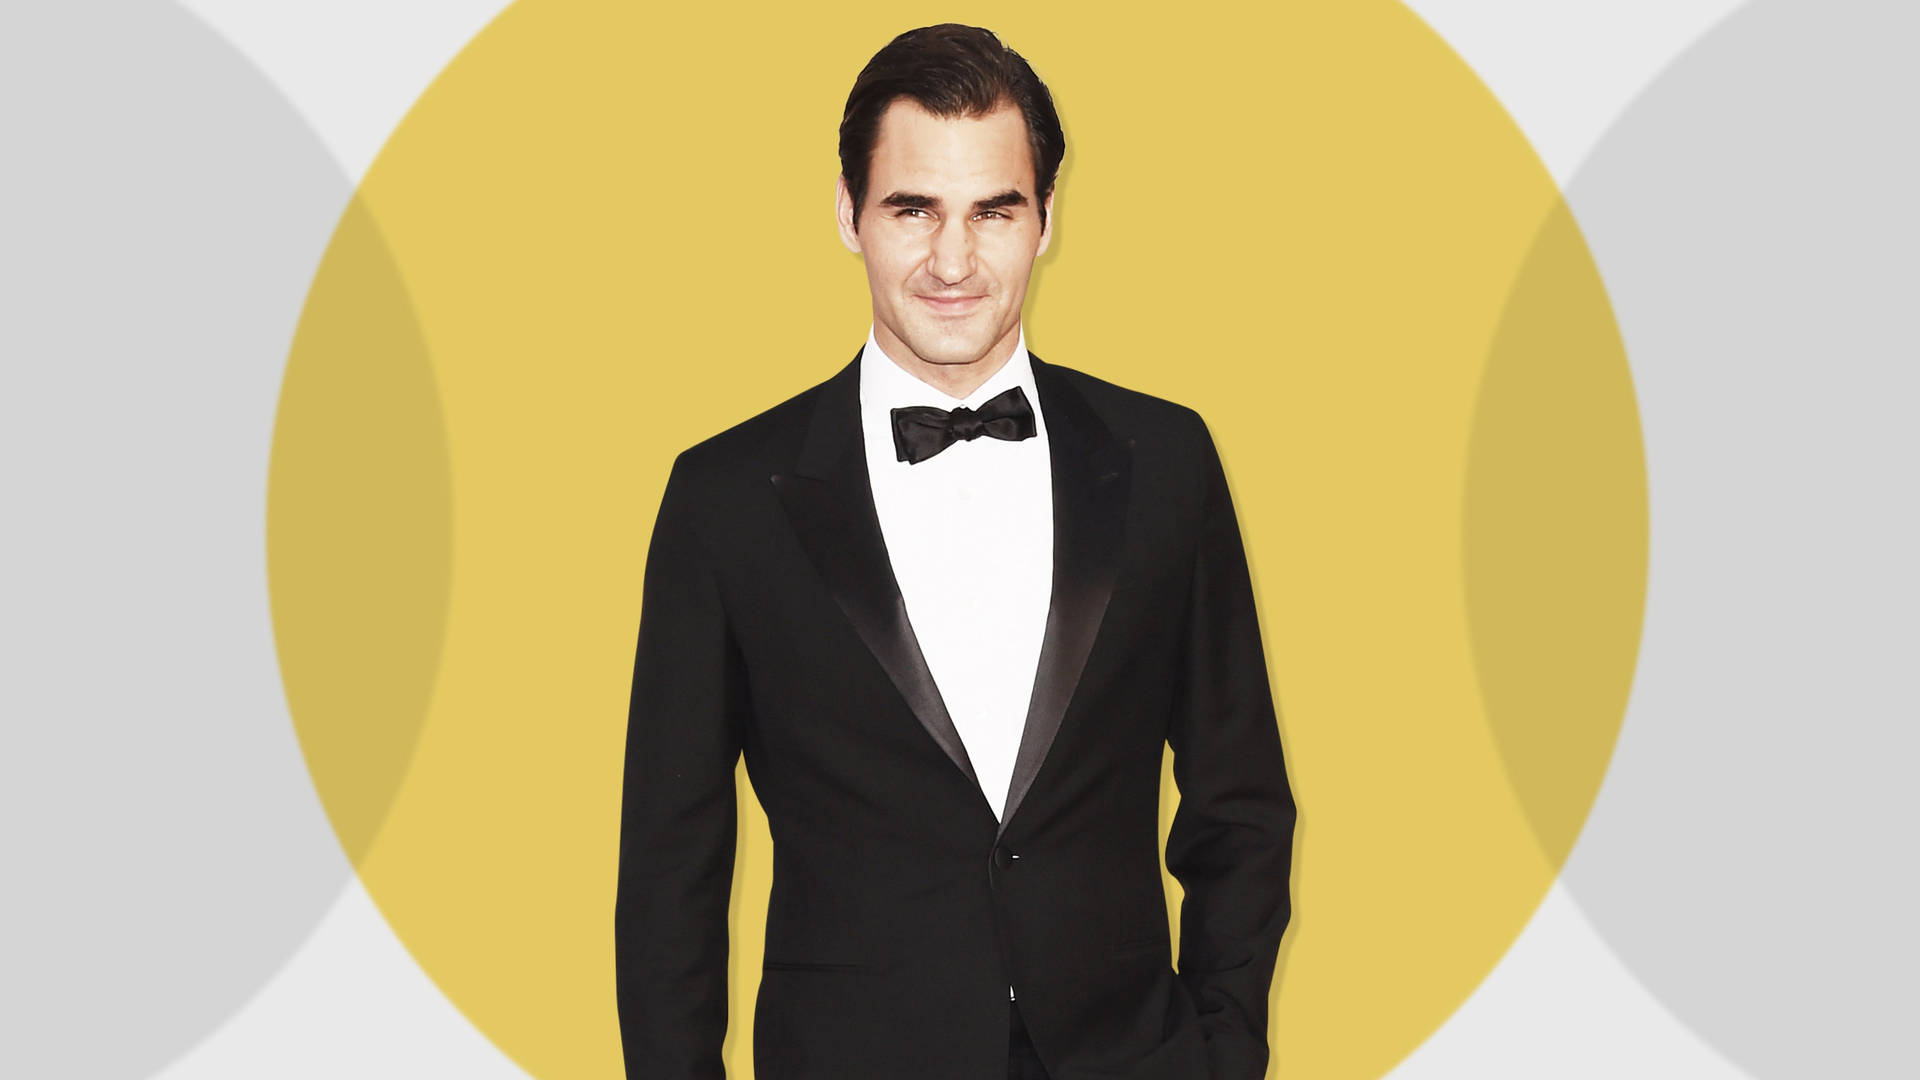 Roger Federer In Suit